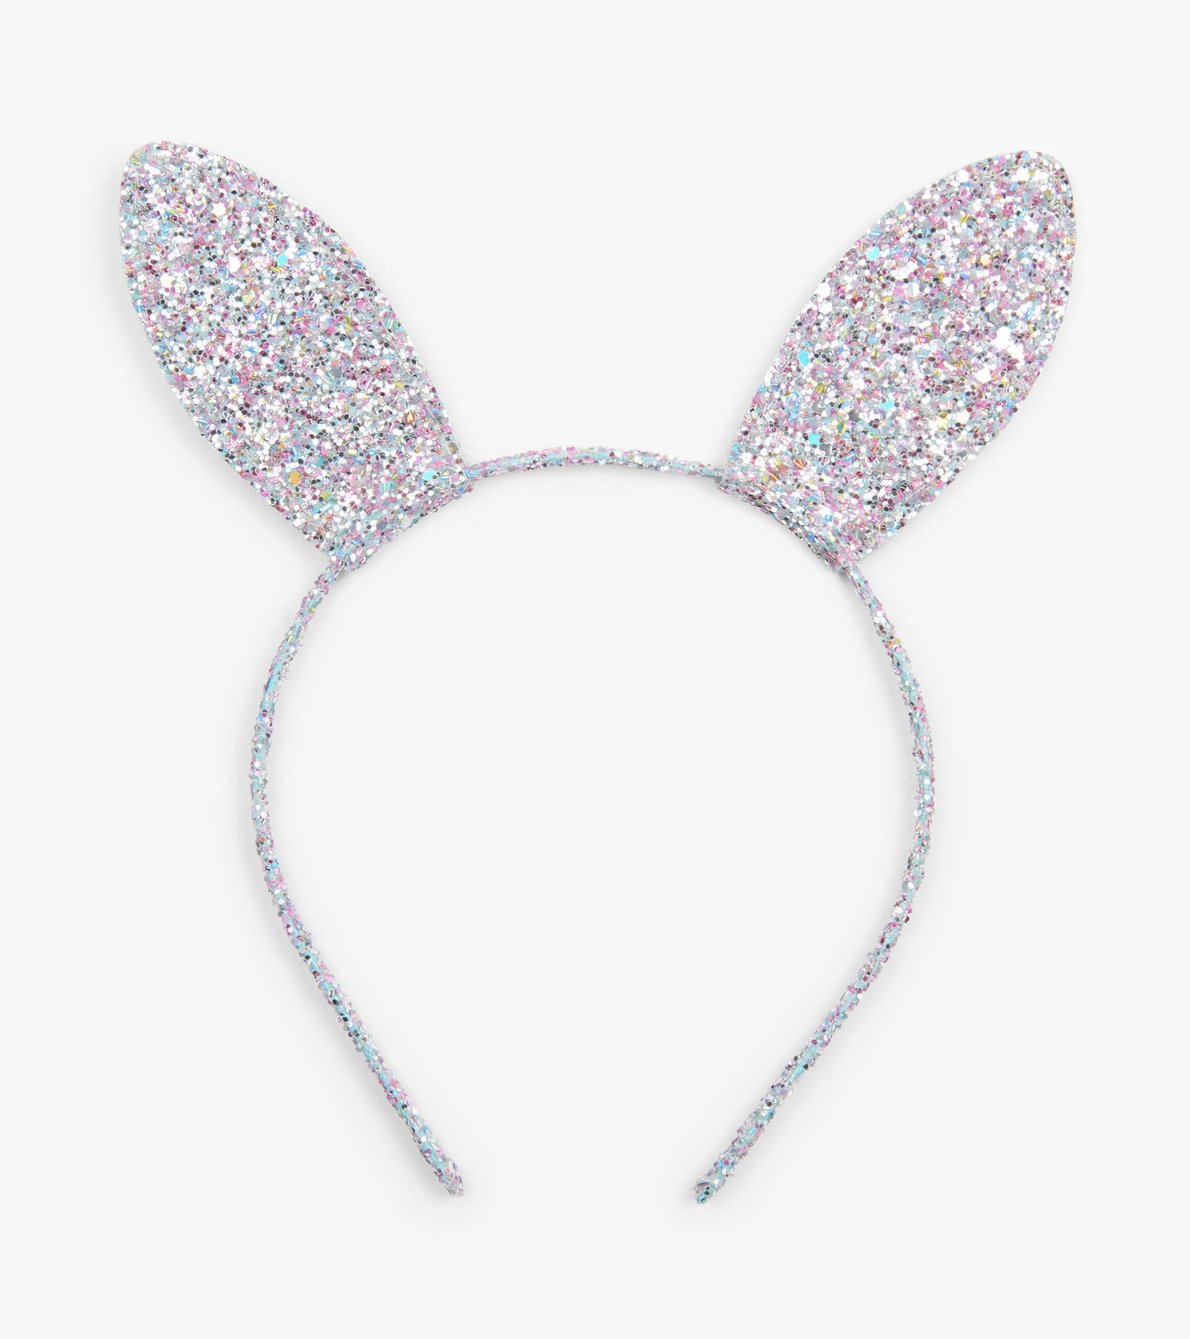 View larger image of Kaleidoscopic Bunny Ears Headband